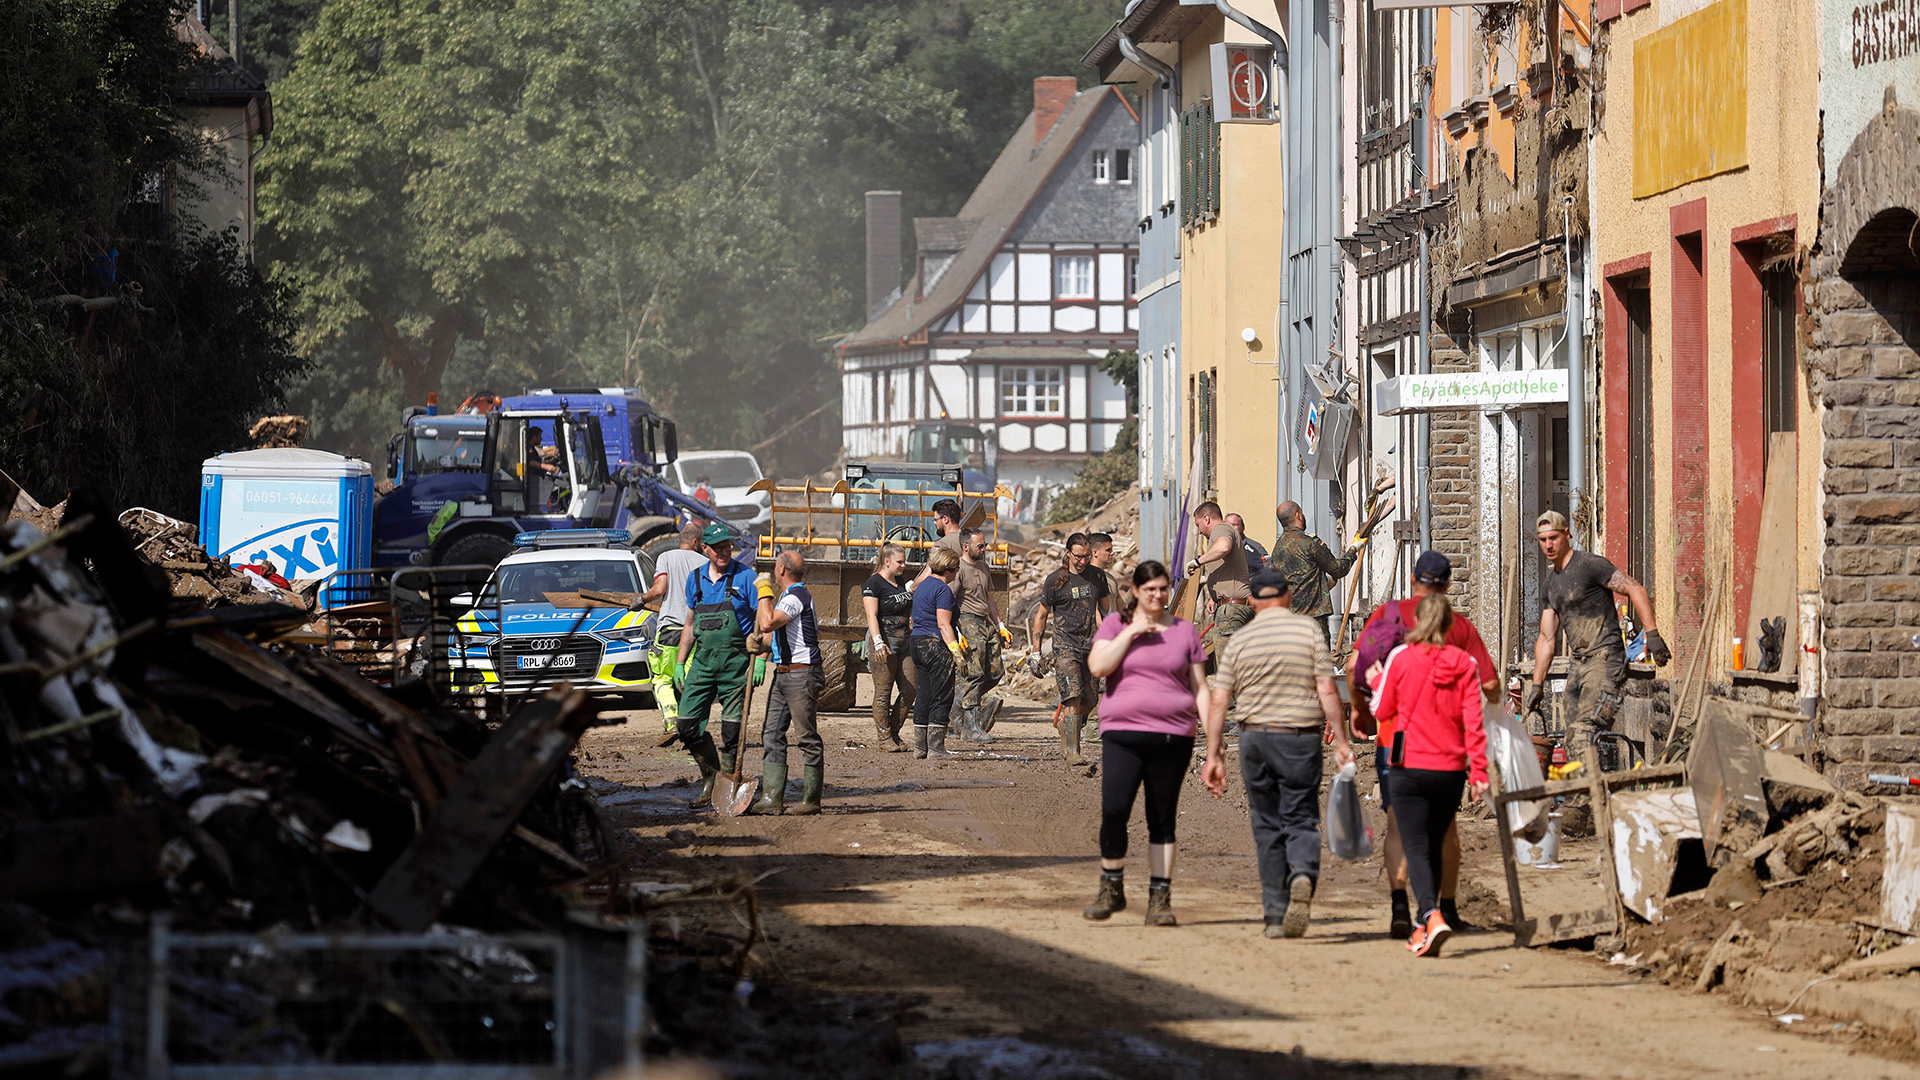 THW, Polizei und Passanten auf einer Straße im Ahrtal mit Geröll und Schlamm (Bild vom August 2021) | picture alliance / Geisler-Fotop